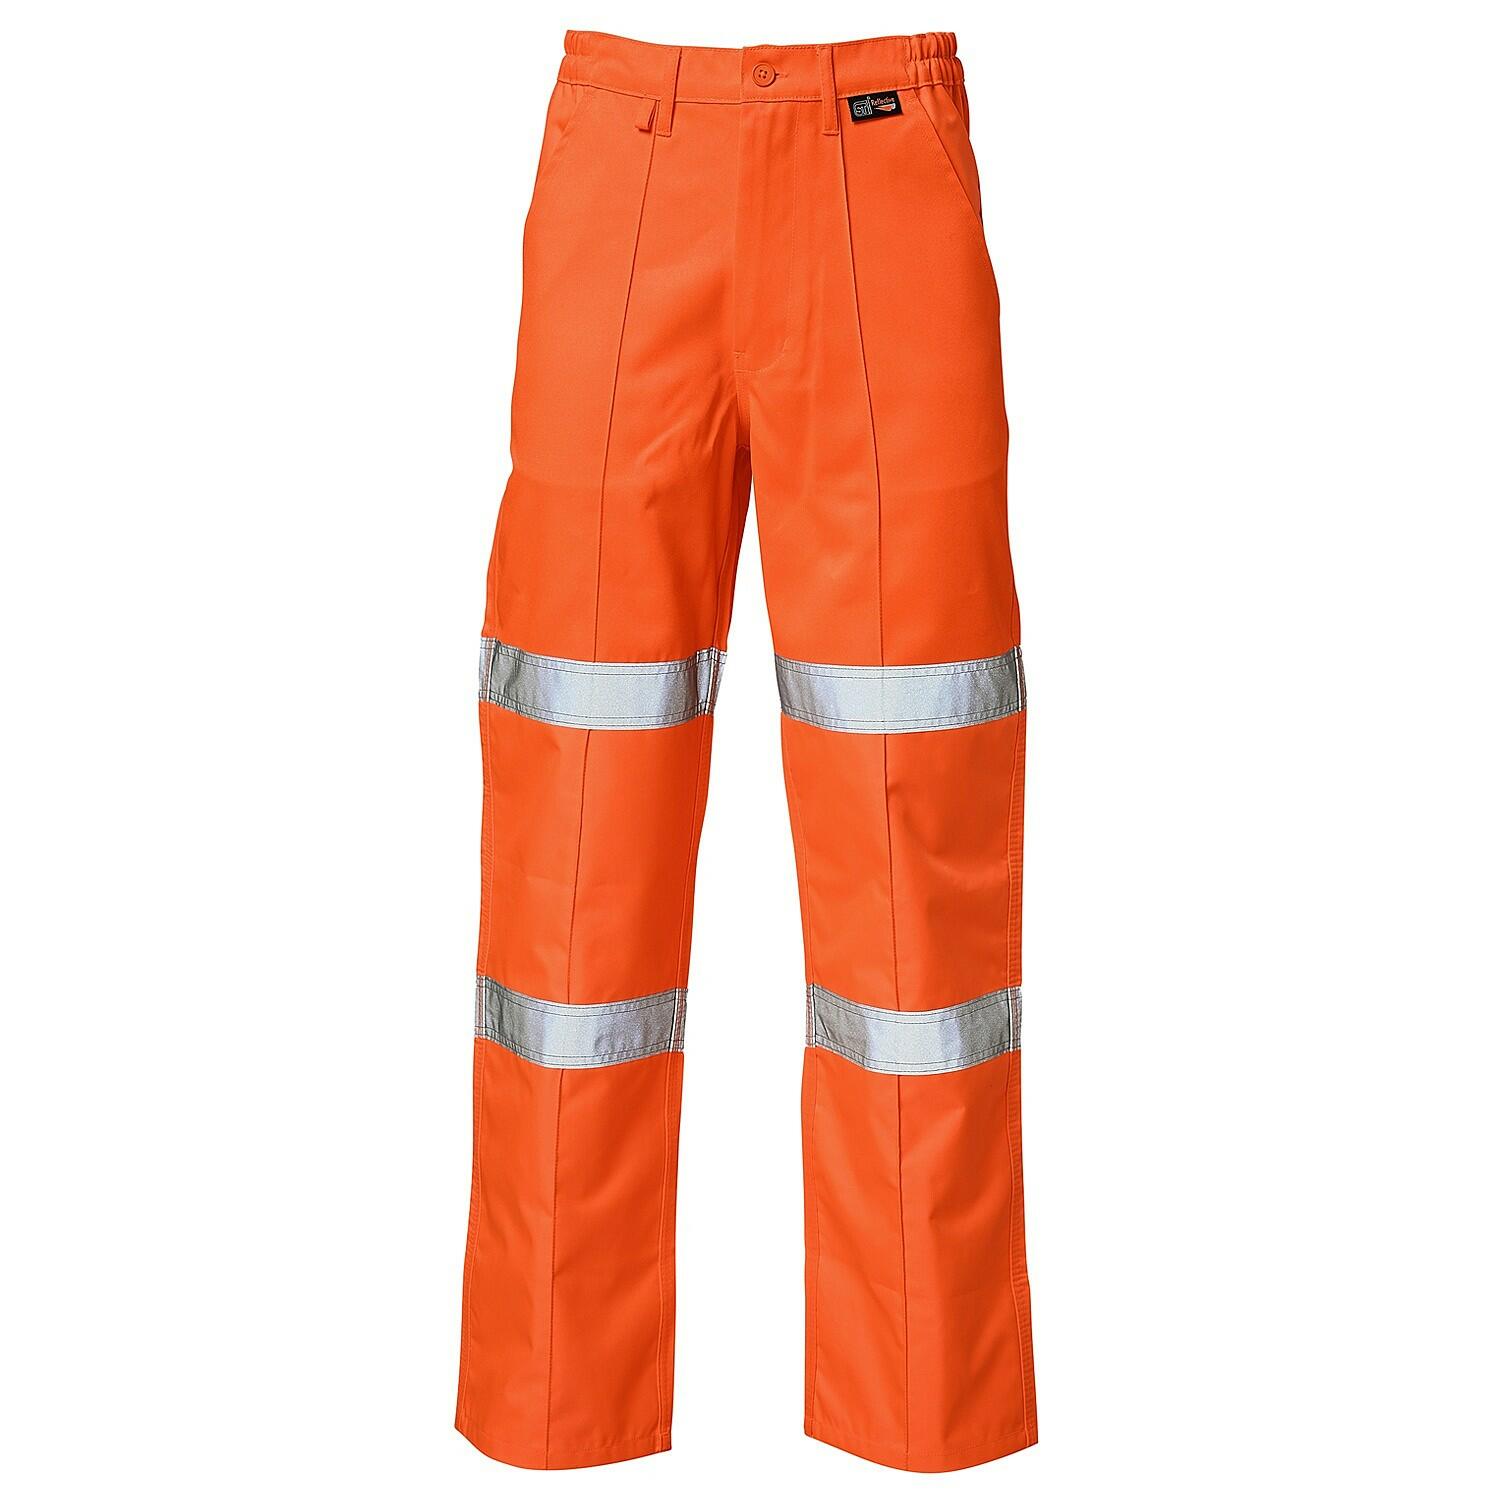 Supertouch Hi-Vis Orange 2 Band Ballistic Trousers